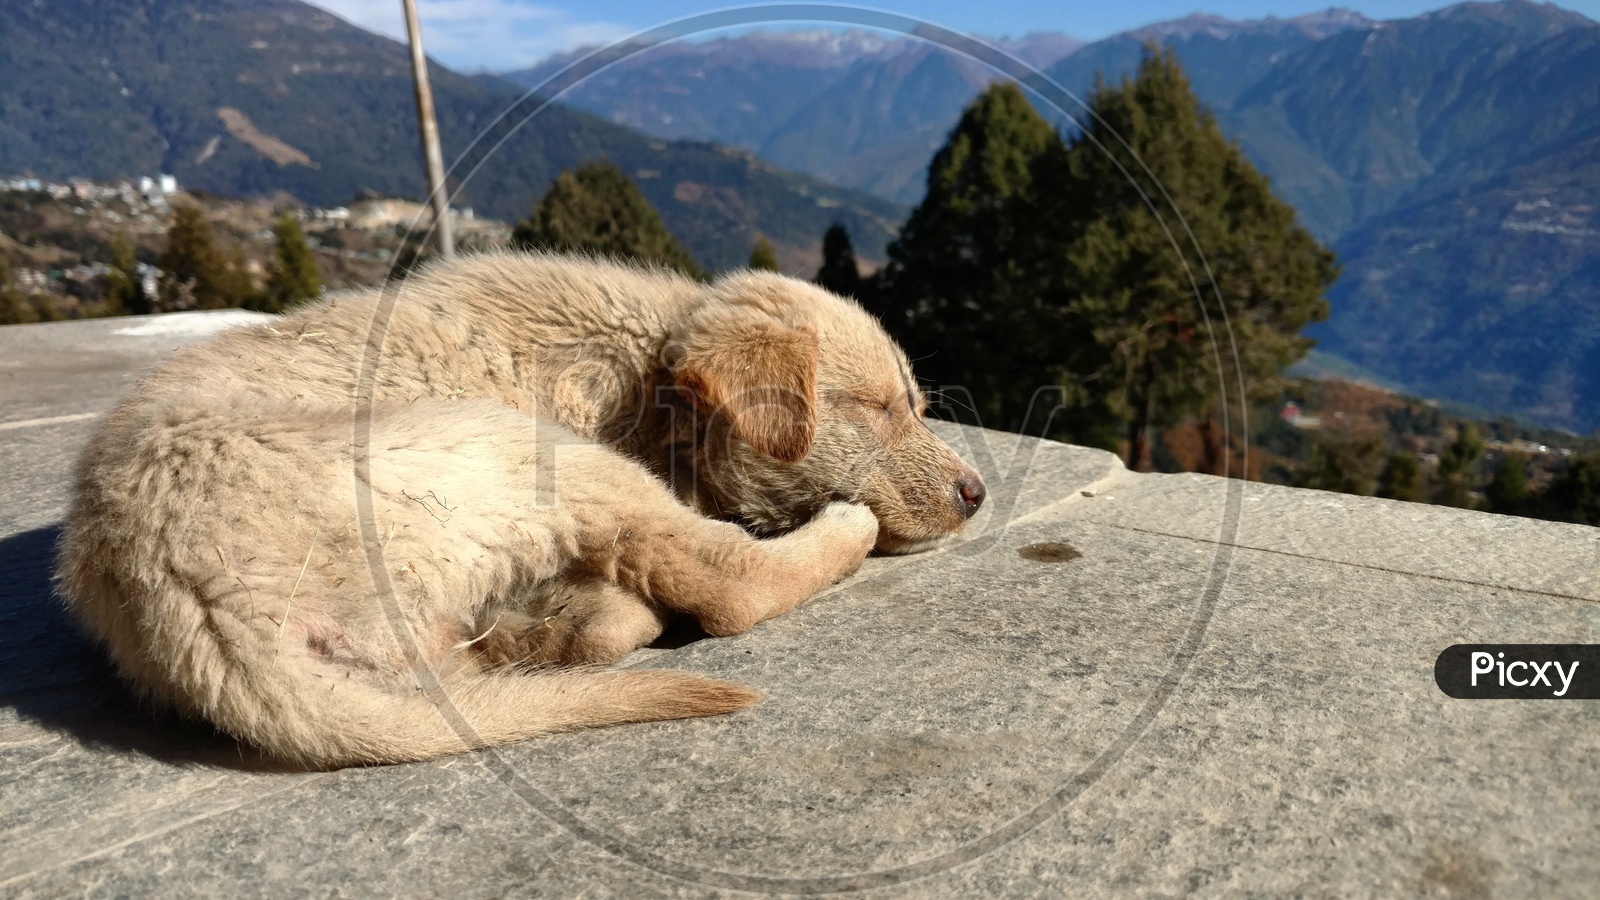 Sleeping Dog in Peace at Tawang Monastery